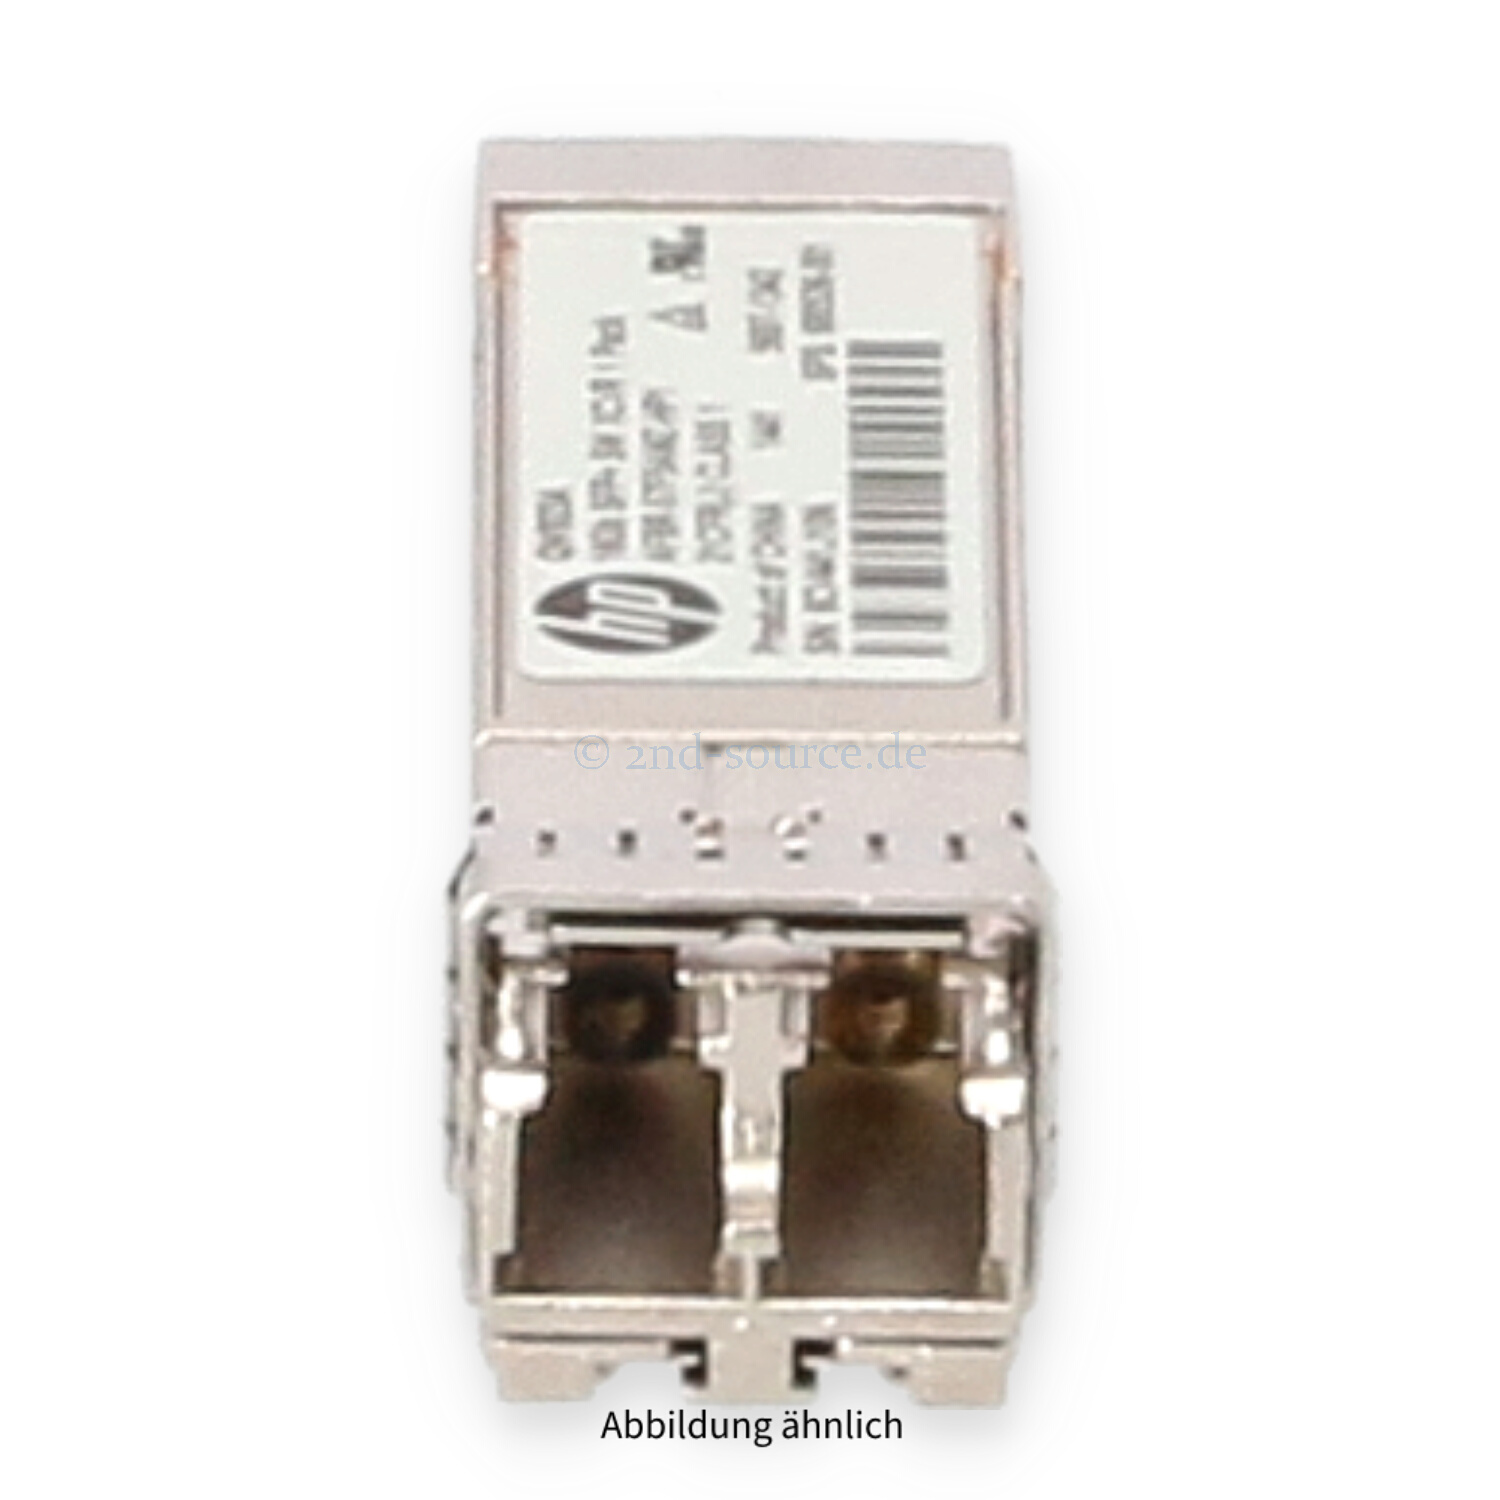 HPE 16GB Shortwave FC SFP+ Transceiver Module QW923A 680536-001